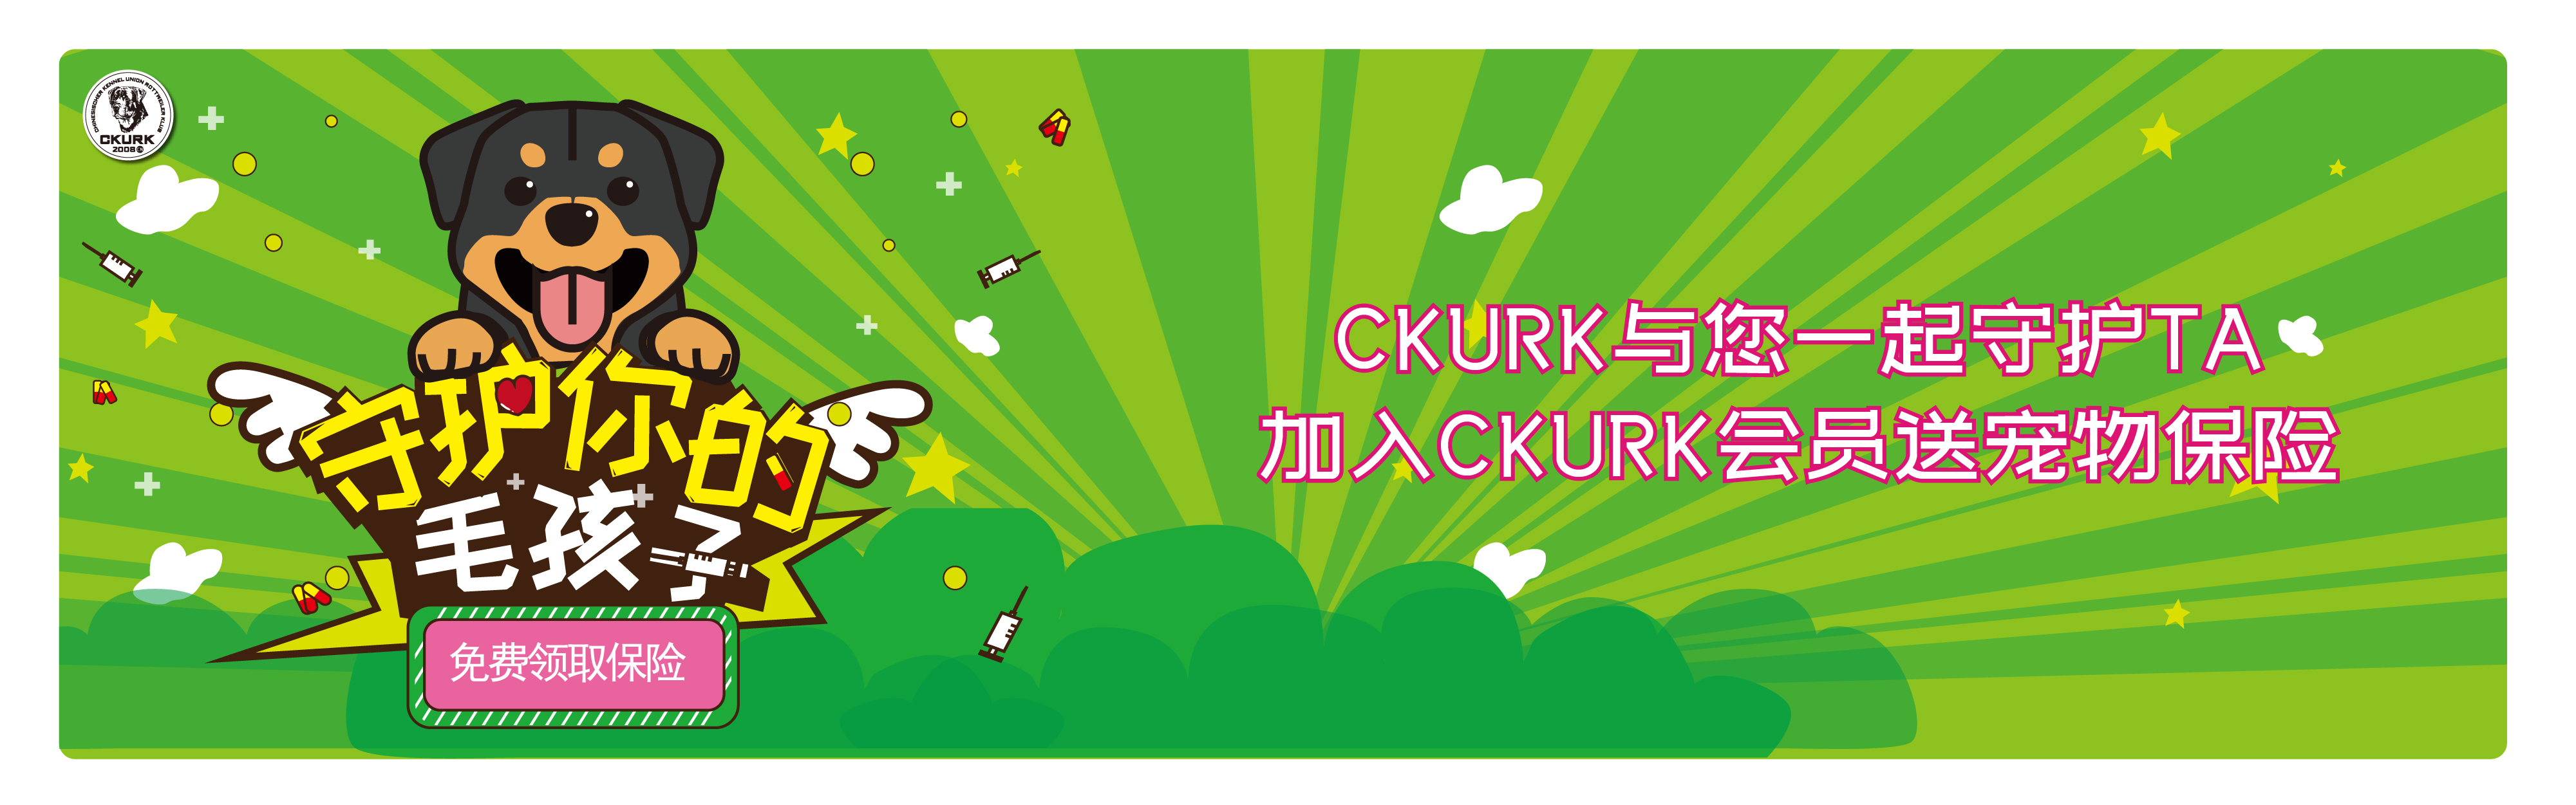 加入CKURK送保险